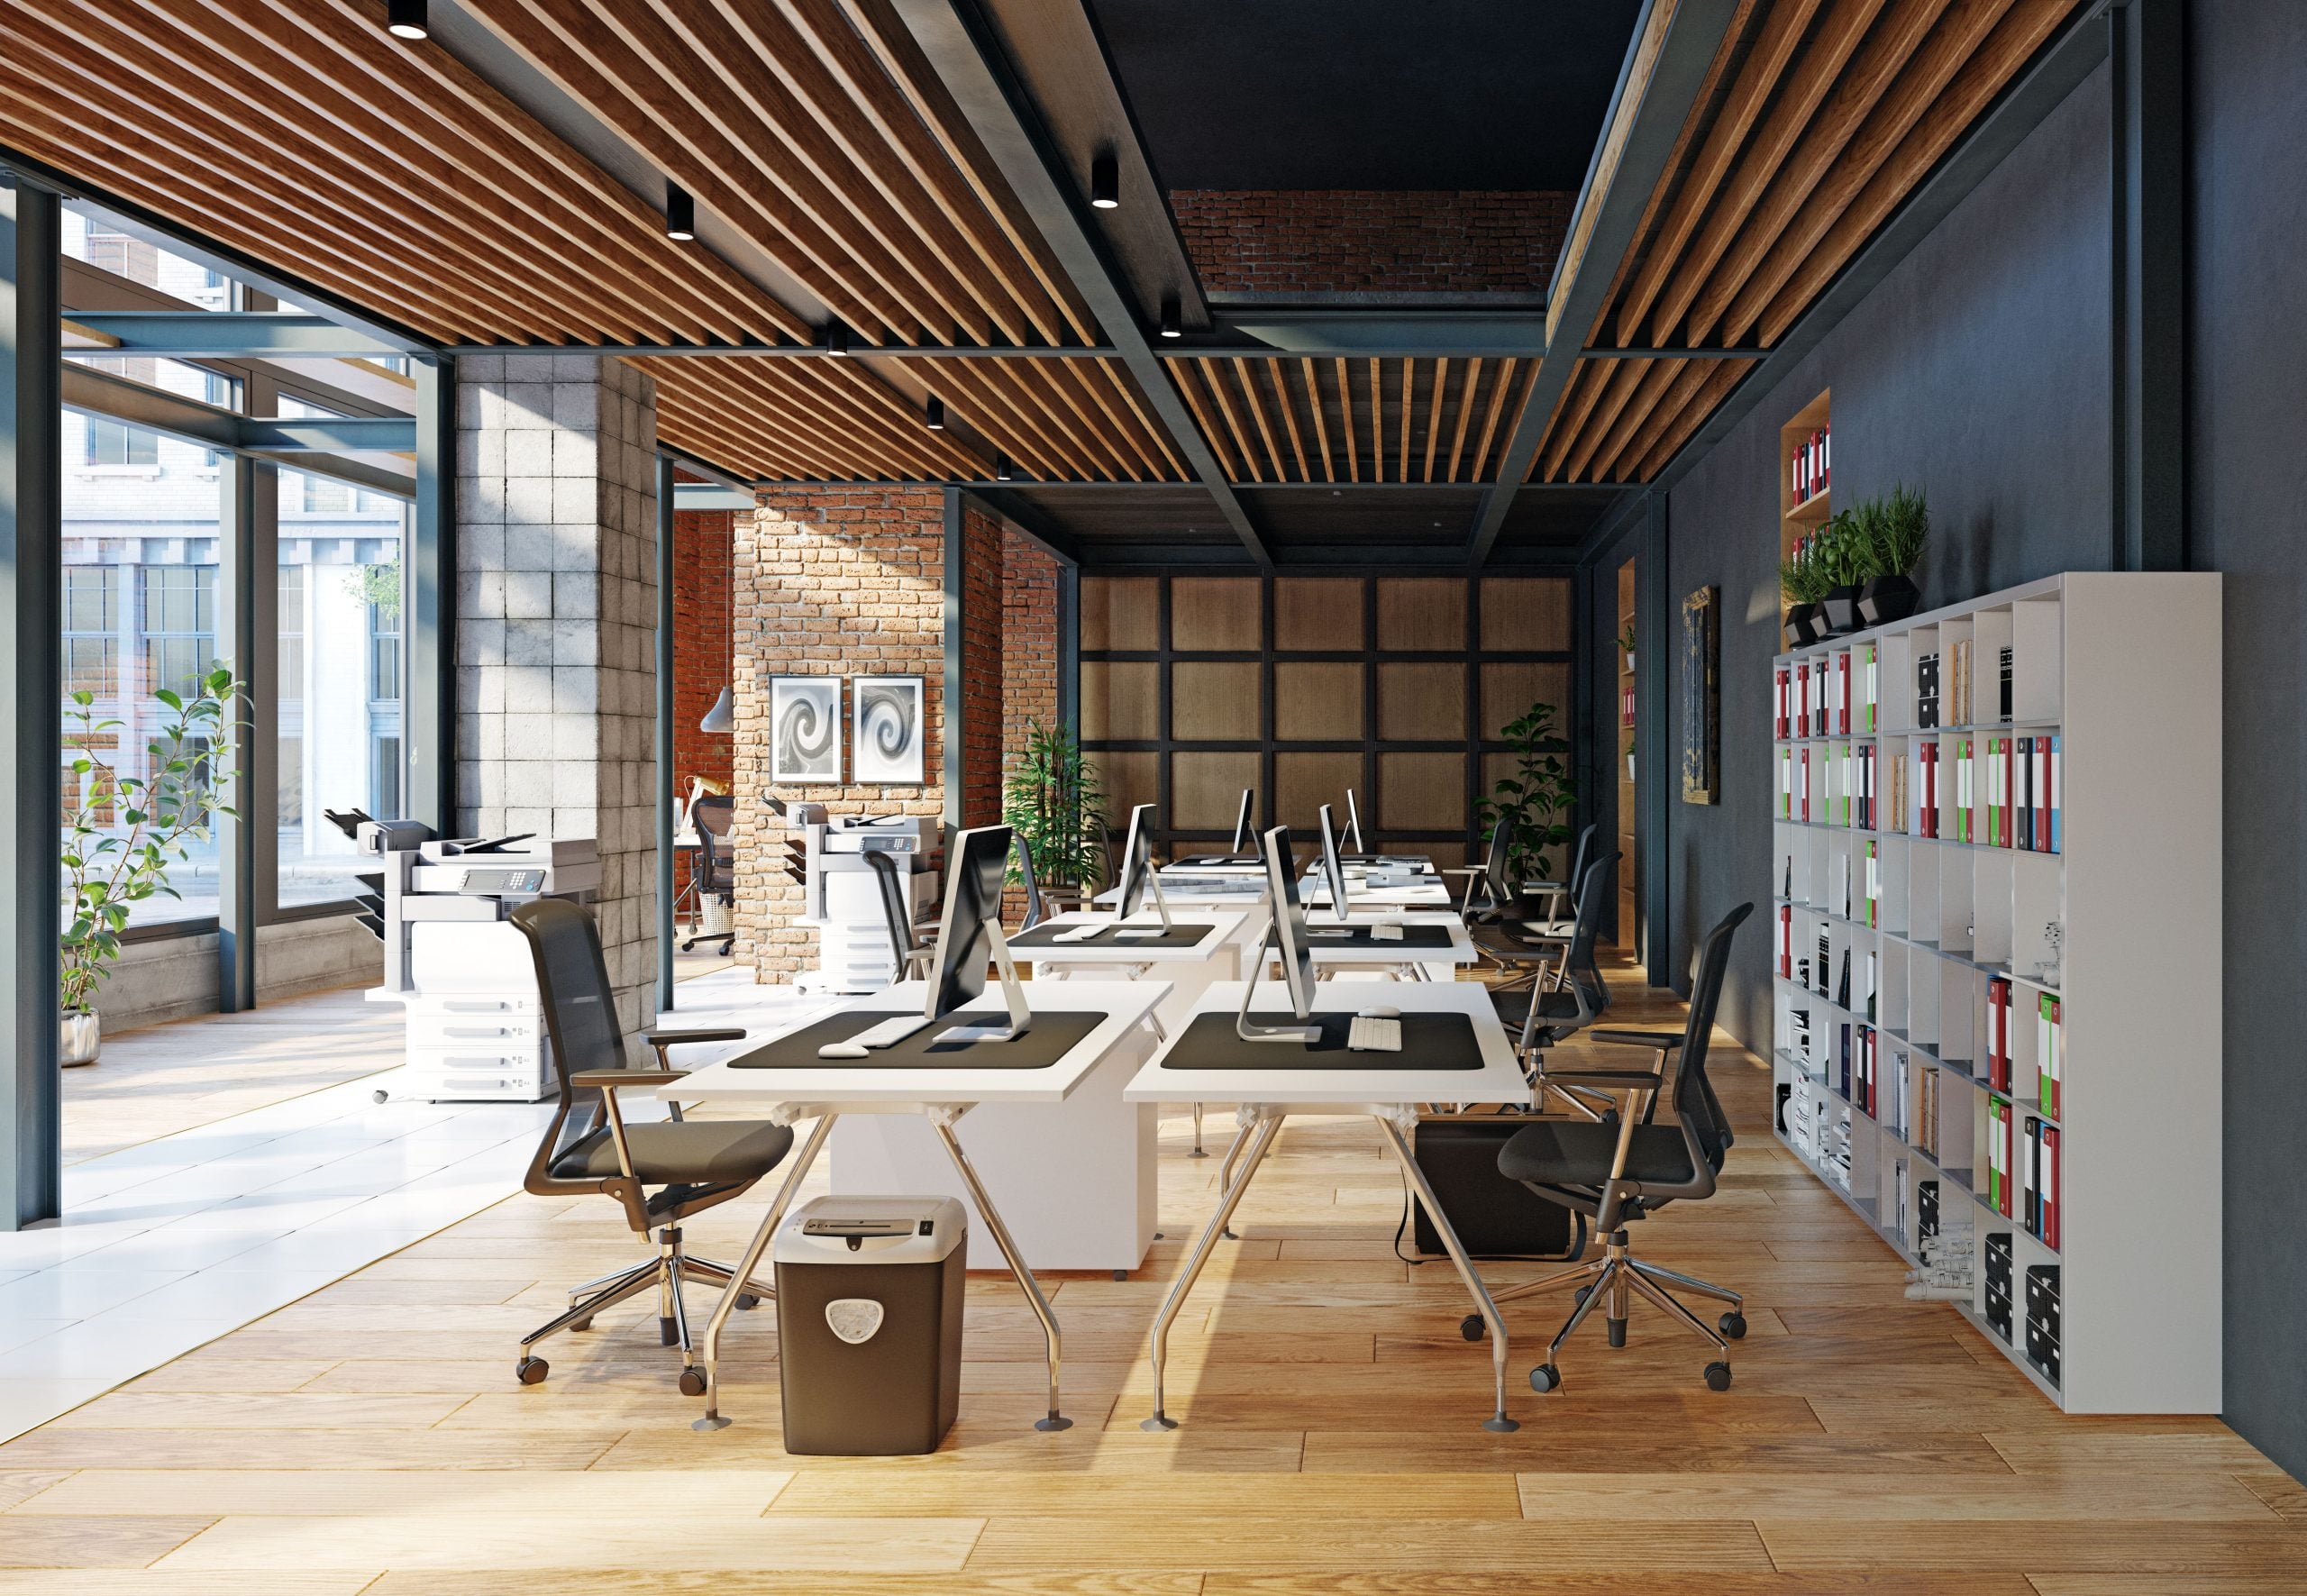 Los 5 muebles de oficina indispensables que debes tener